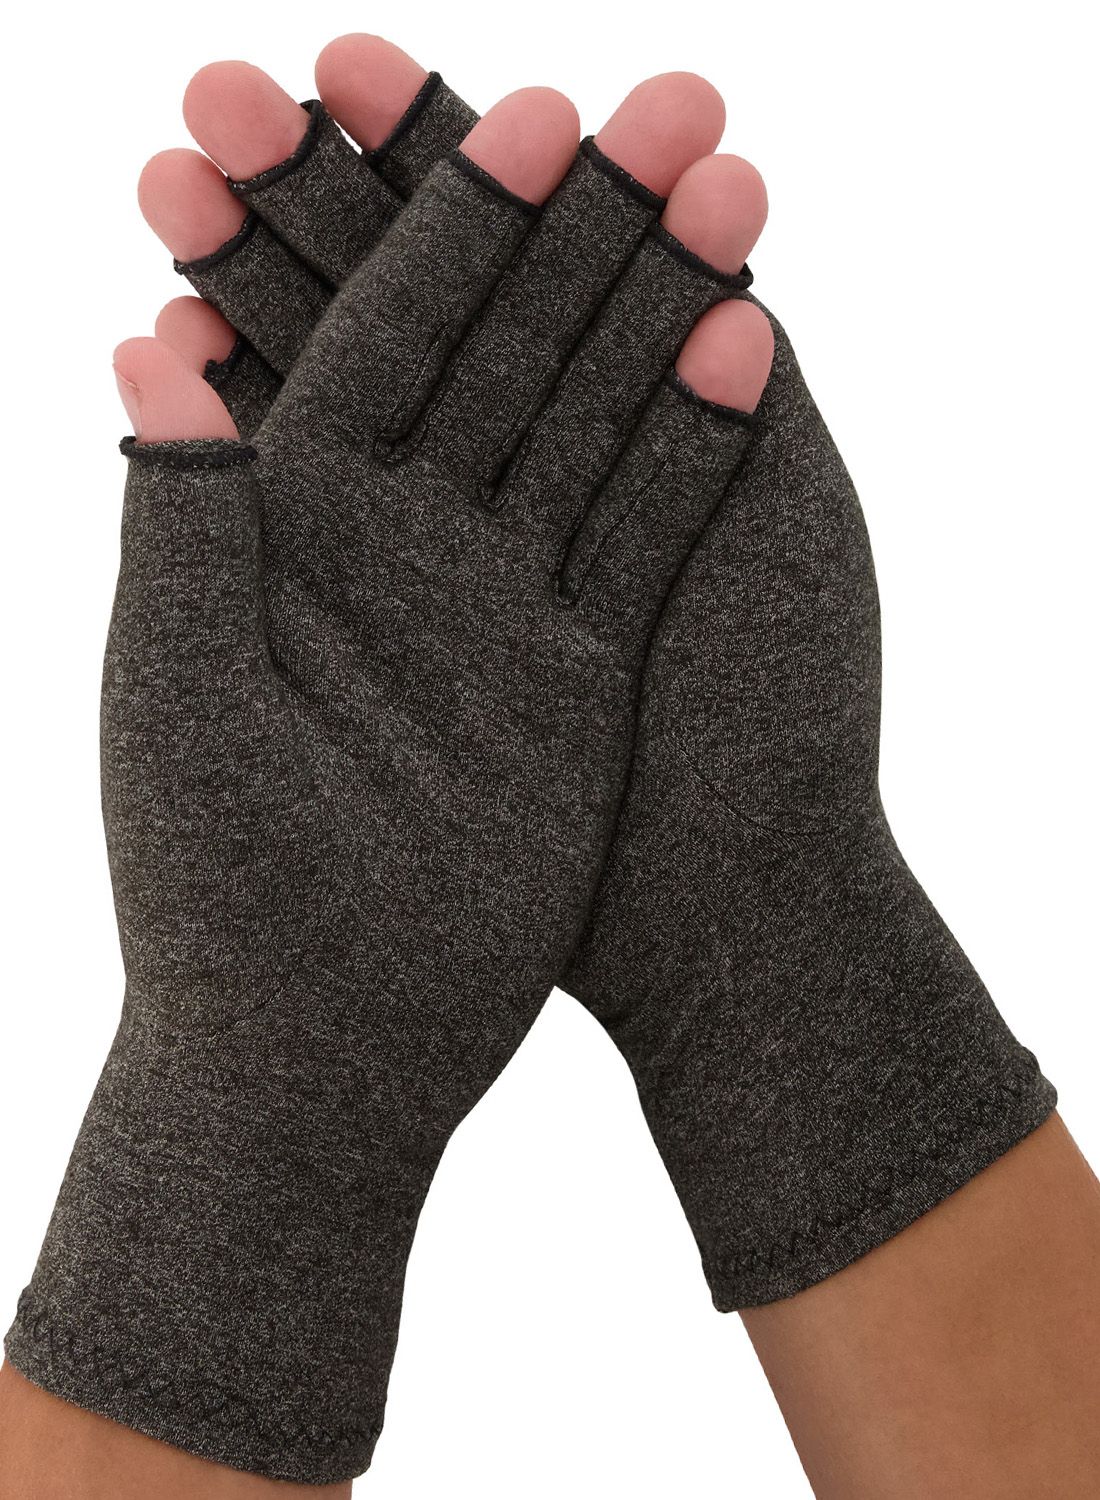 medidu rheumatoid arthritis osteoarthritis gloves for sale